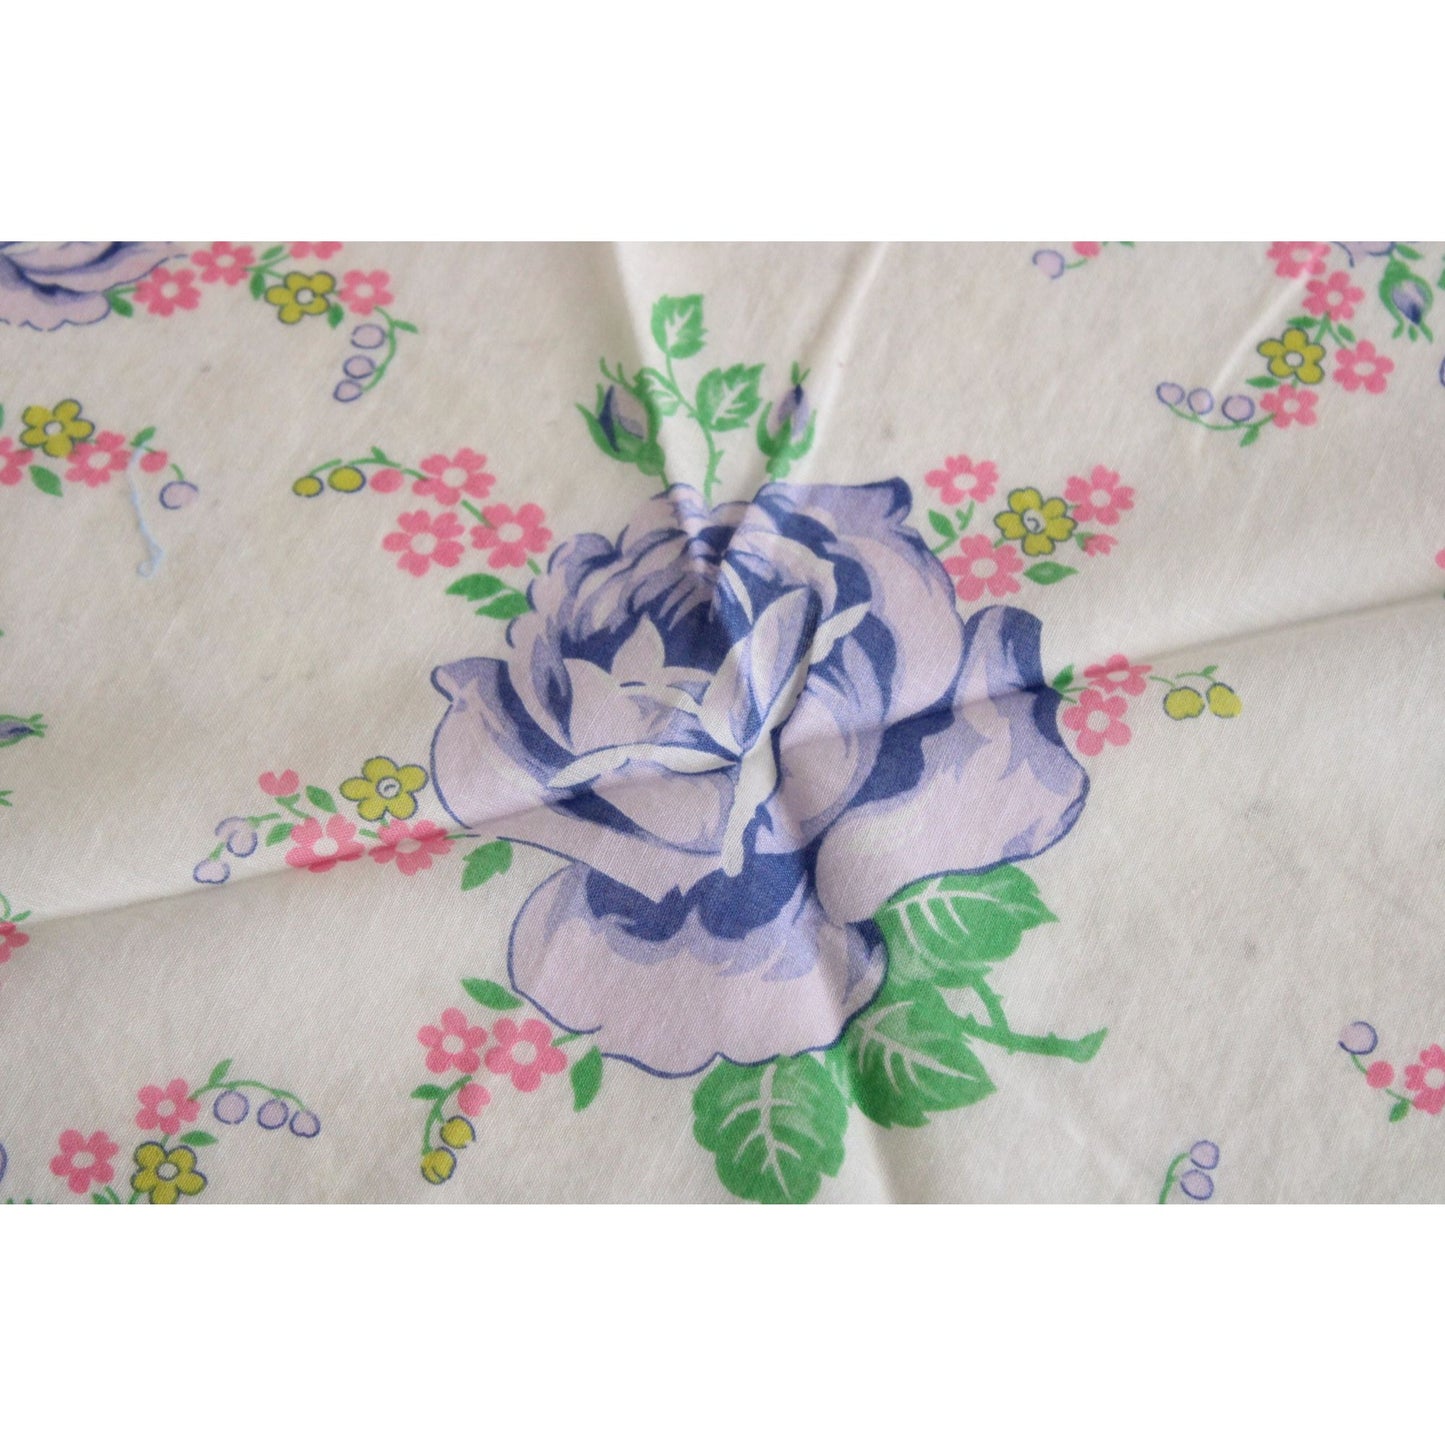 Vintage 1950s Round Floral Handkerchief